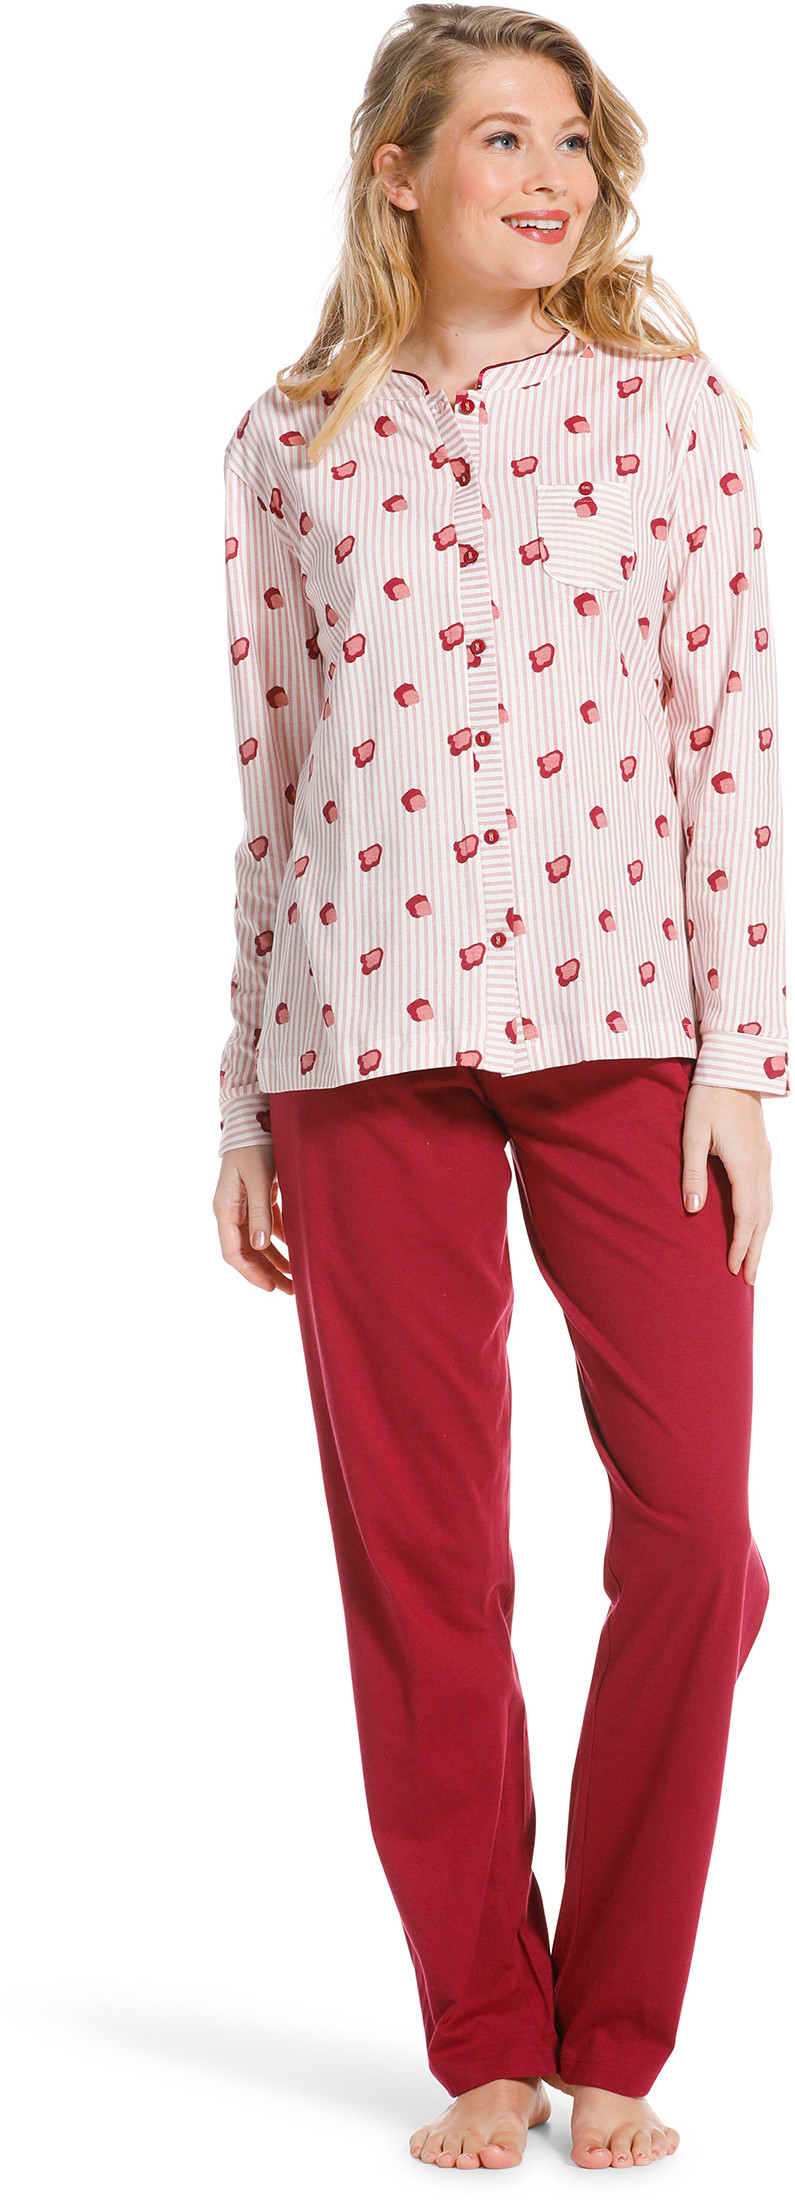 Pastunette doorknoop dames pyjama 20222-104-6-48